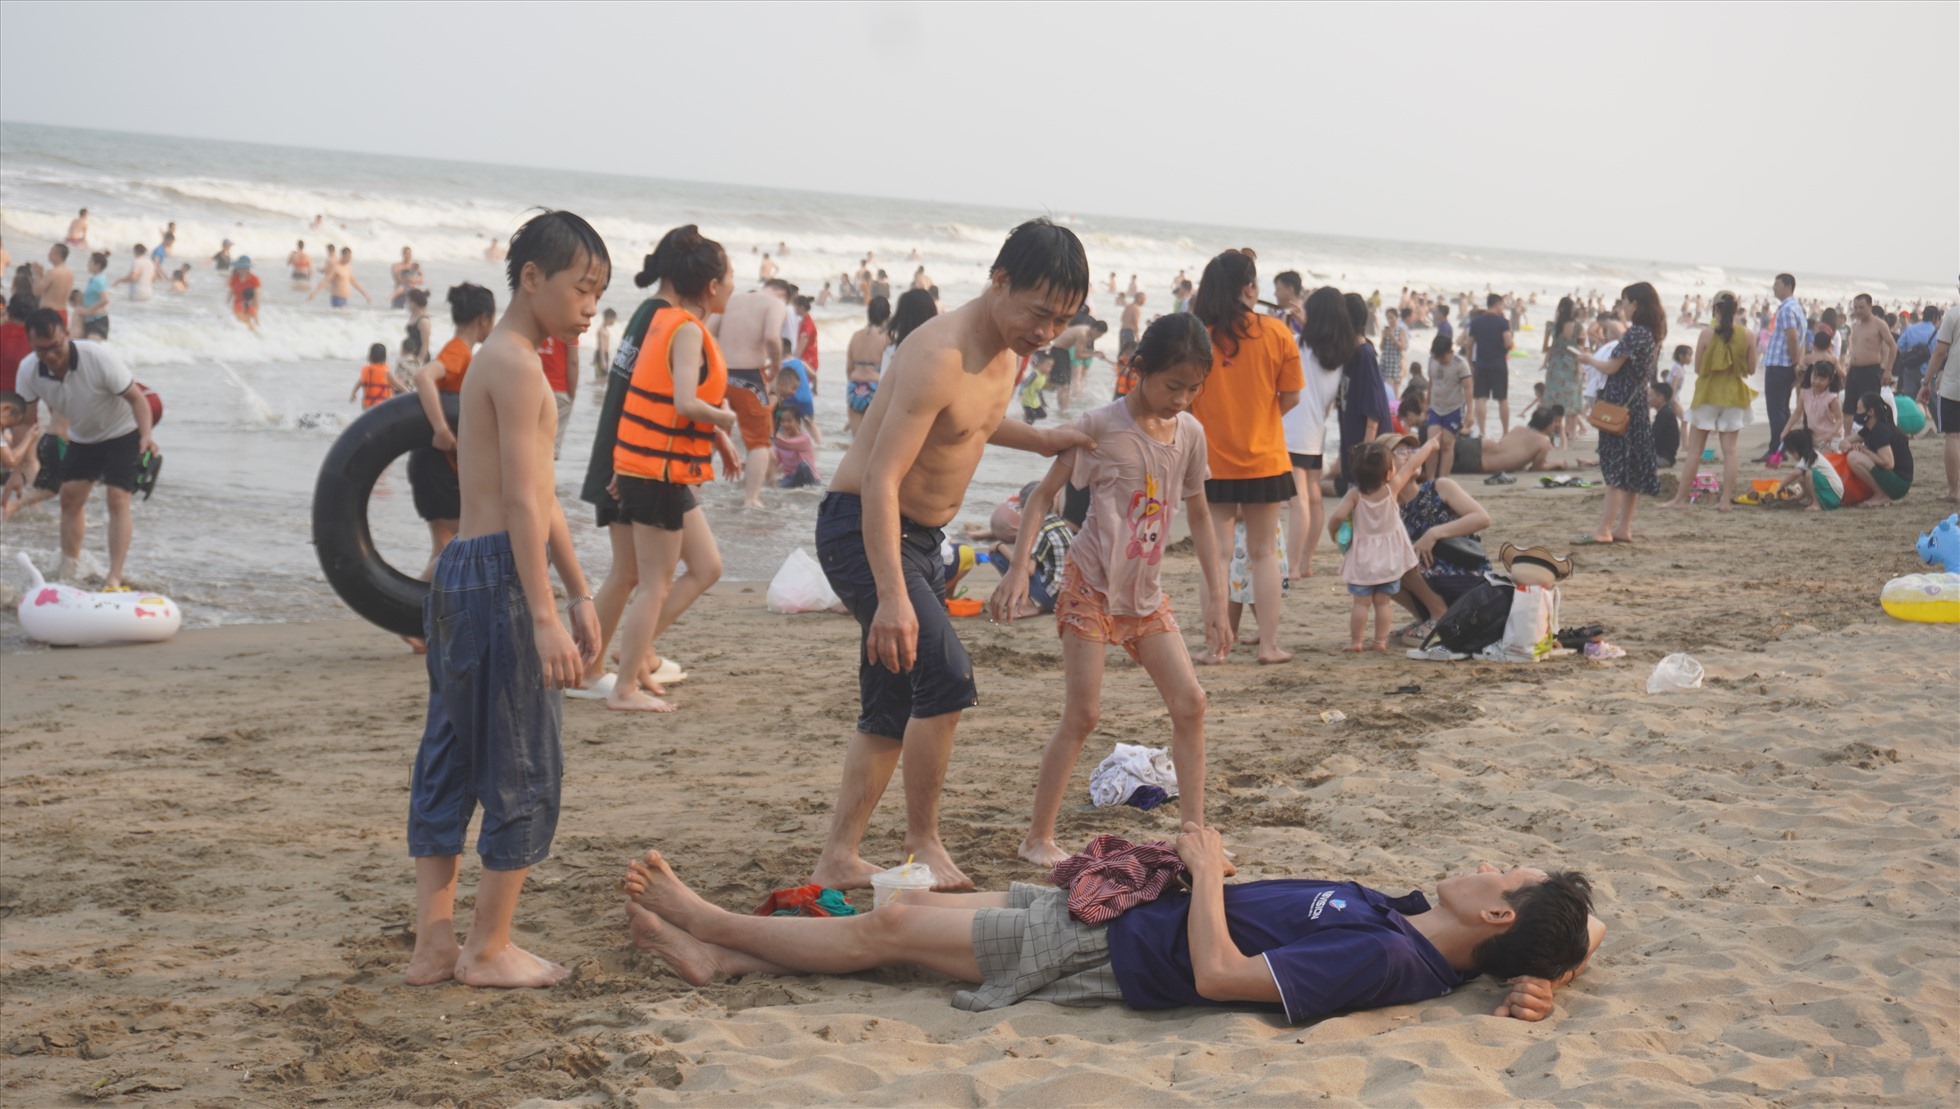 Thời tiết trong ngày khai trương du lịch biển Sầm Sơn 2023 khá nắng nóng, thuận lợi cho du khách tắm biển. Ảnh: Quách Du